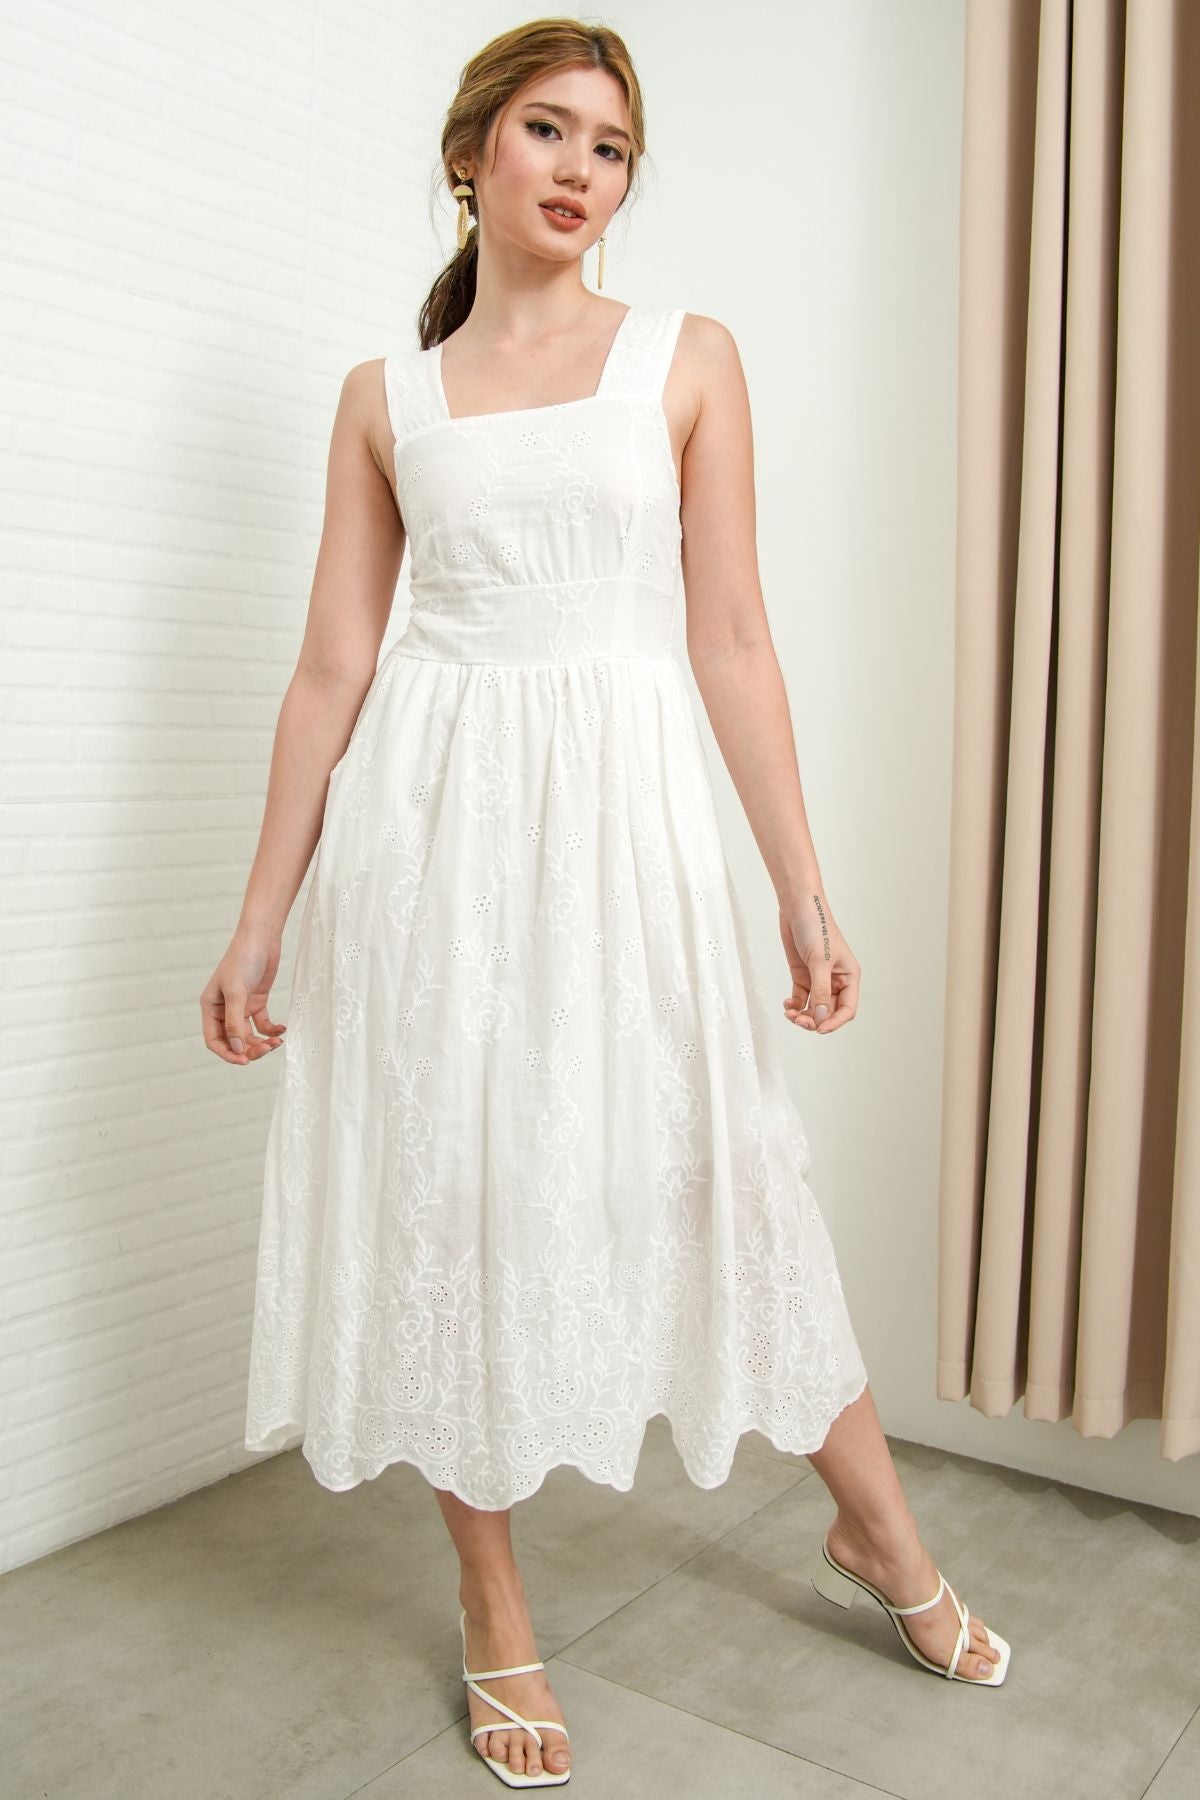 SOLEIL Sleeveless Eyelet Midi Dress (White)